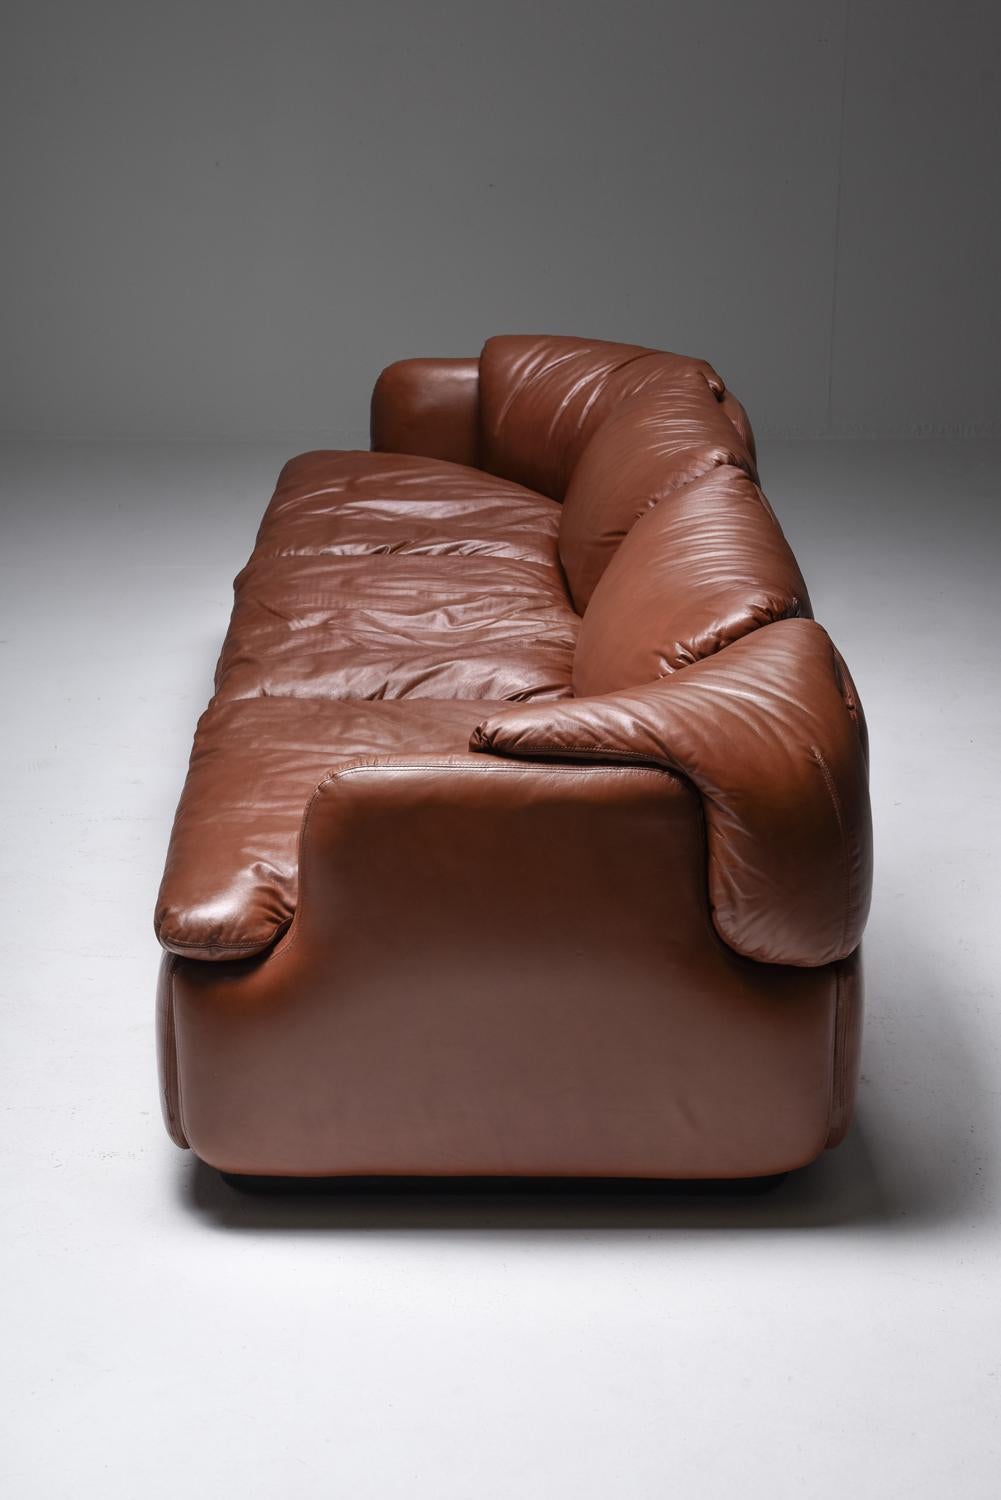 Saporiti 'Confidential' Cognac Leather Sofa by Alberto Rosselli 3